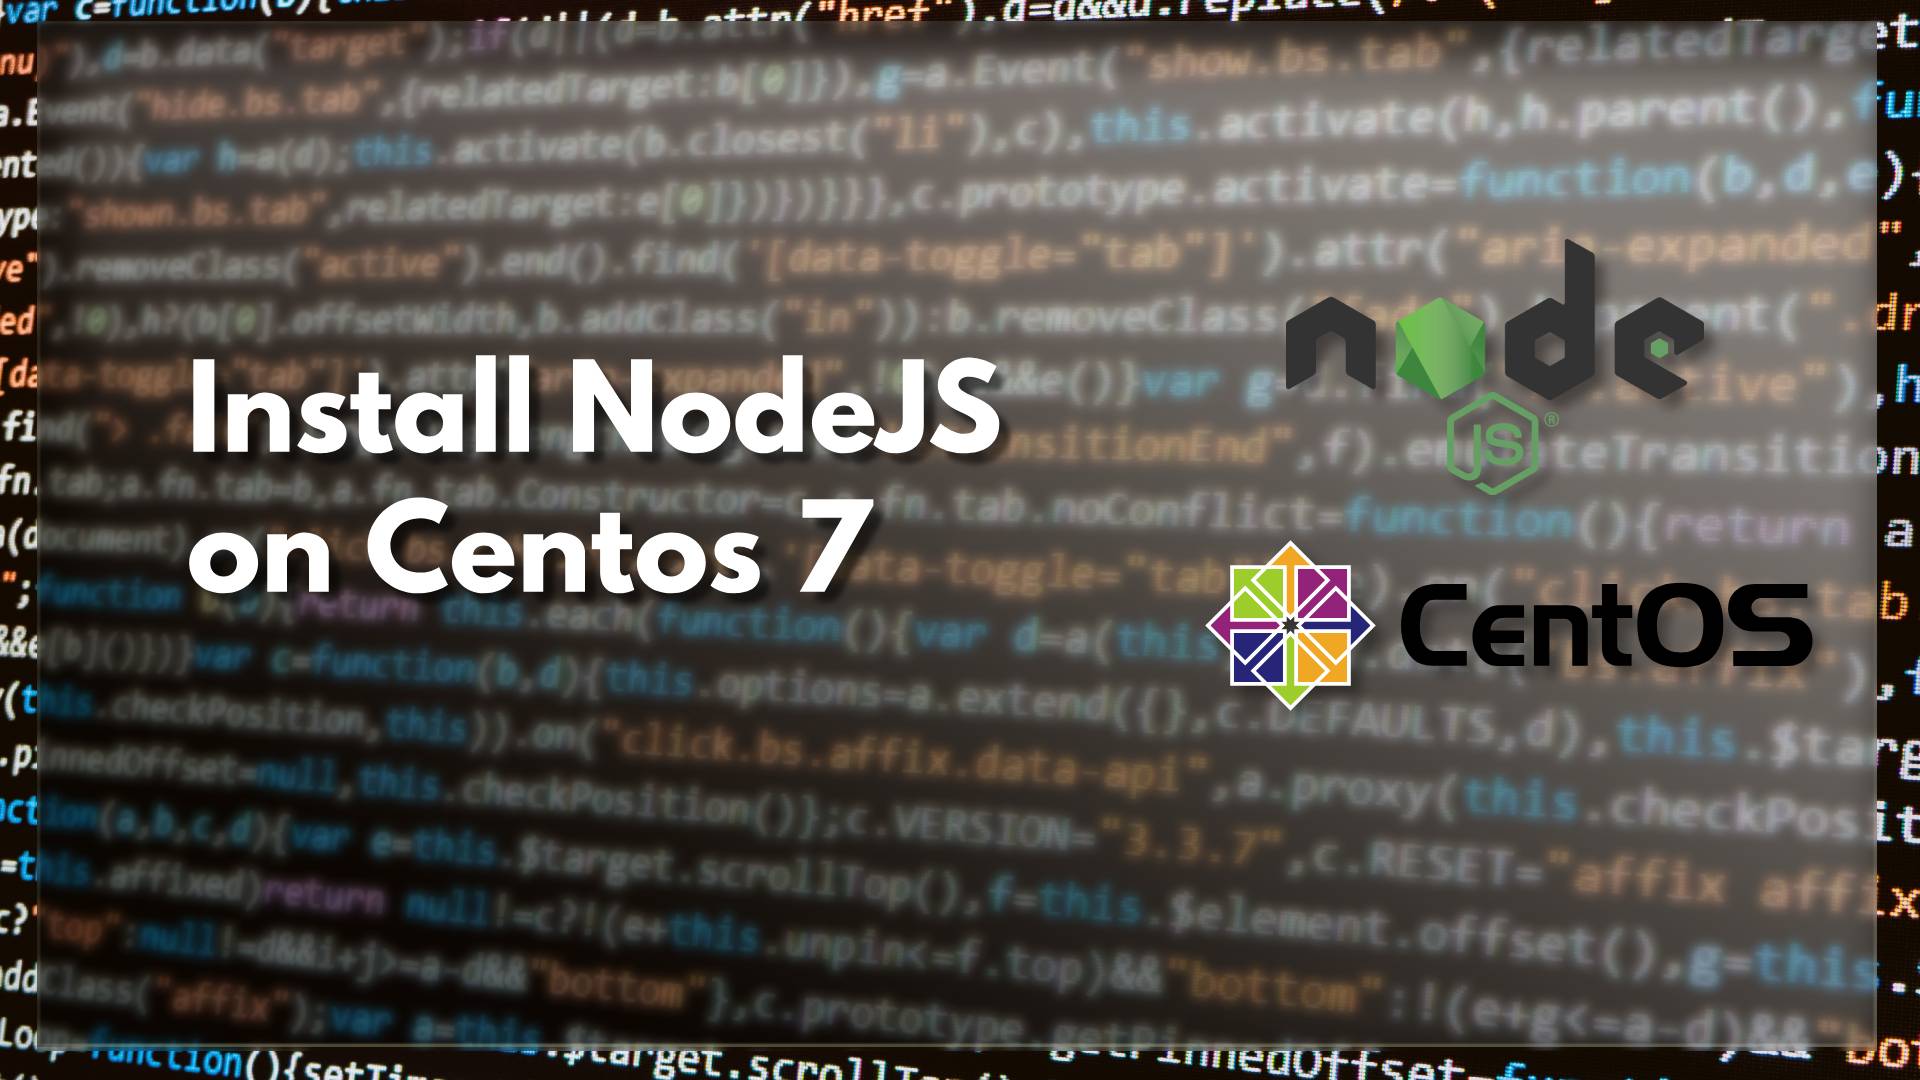 Install NodeJS on Centos 7